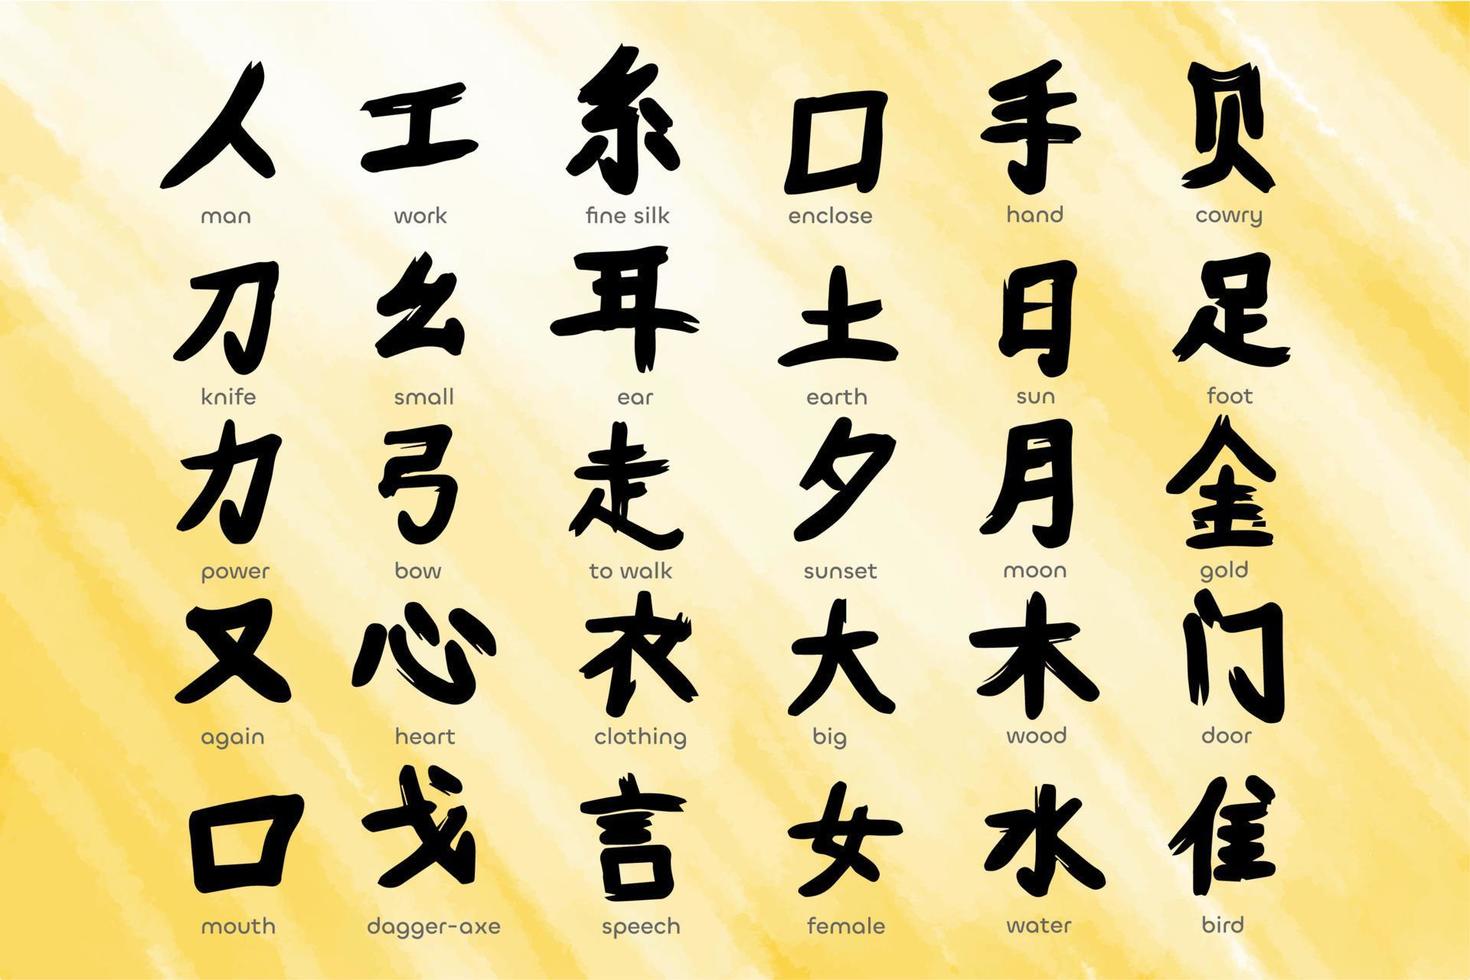 hiéroglyphes, caractères chinois dessinés avec des coups de pinceau, fond aquarelle vecteur